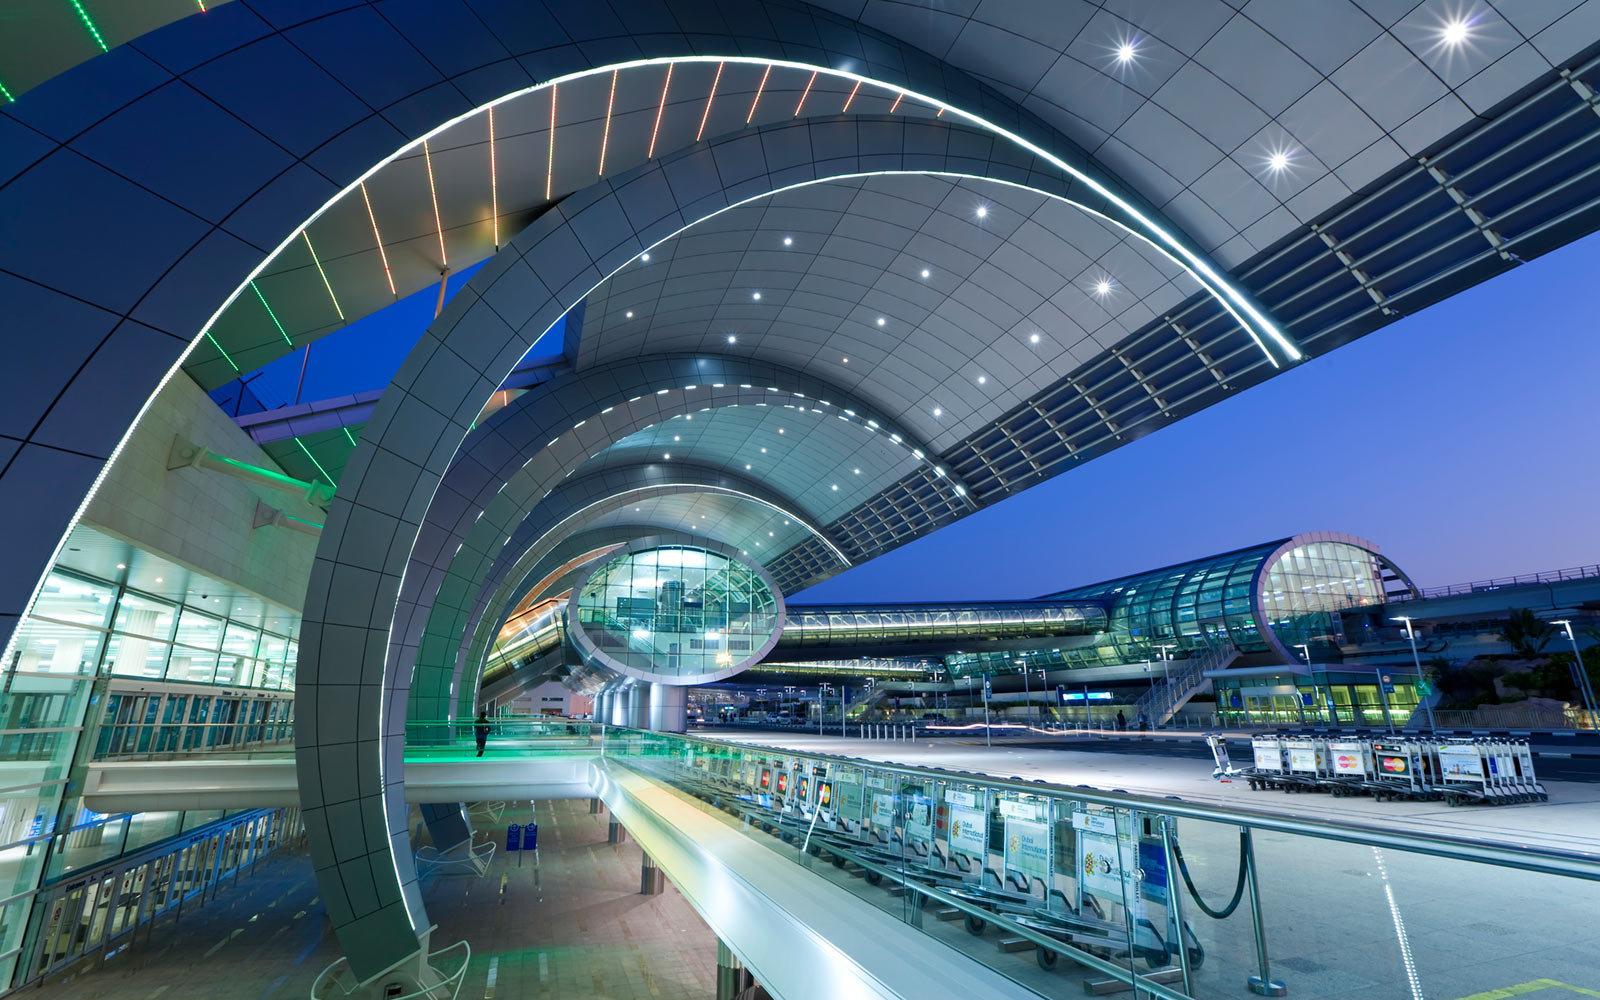 【携程攻略】迪拜国际机场，此次阿联酋旅行来回有幸乘坐阿联酋航空空客A380，进入迪拜机场，发现…